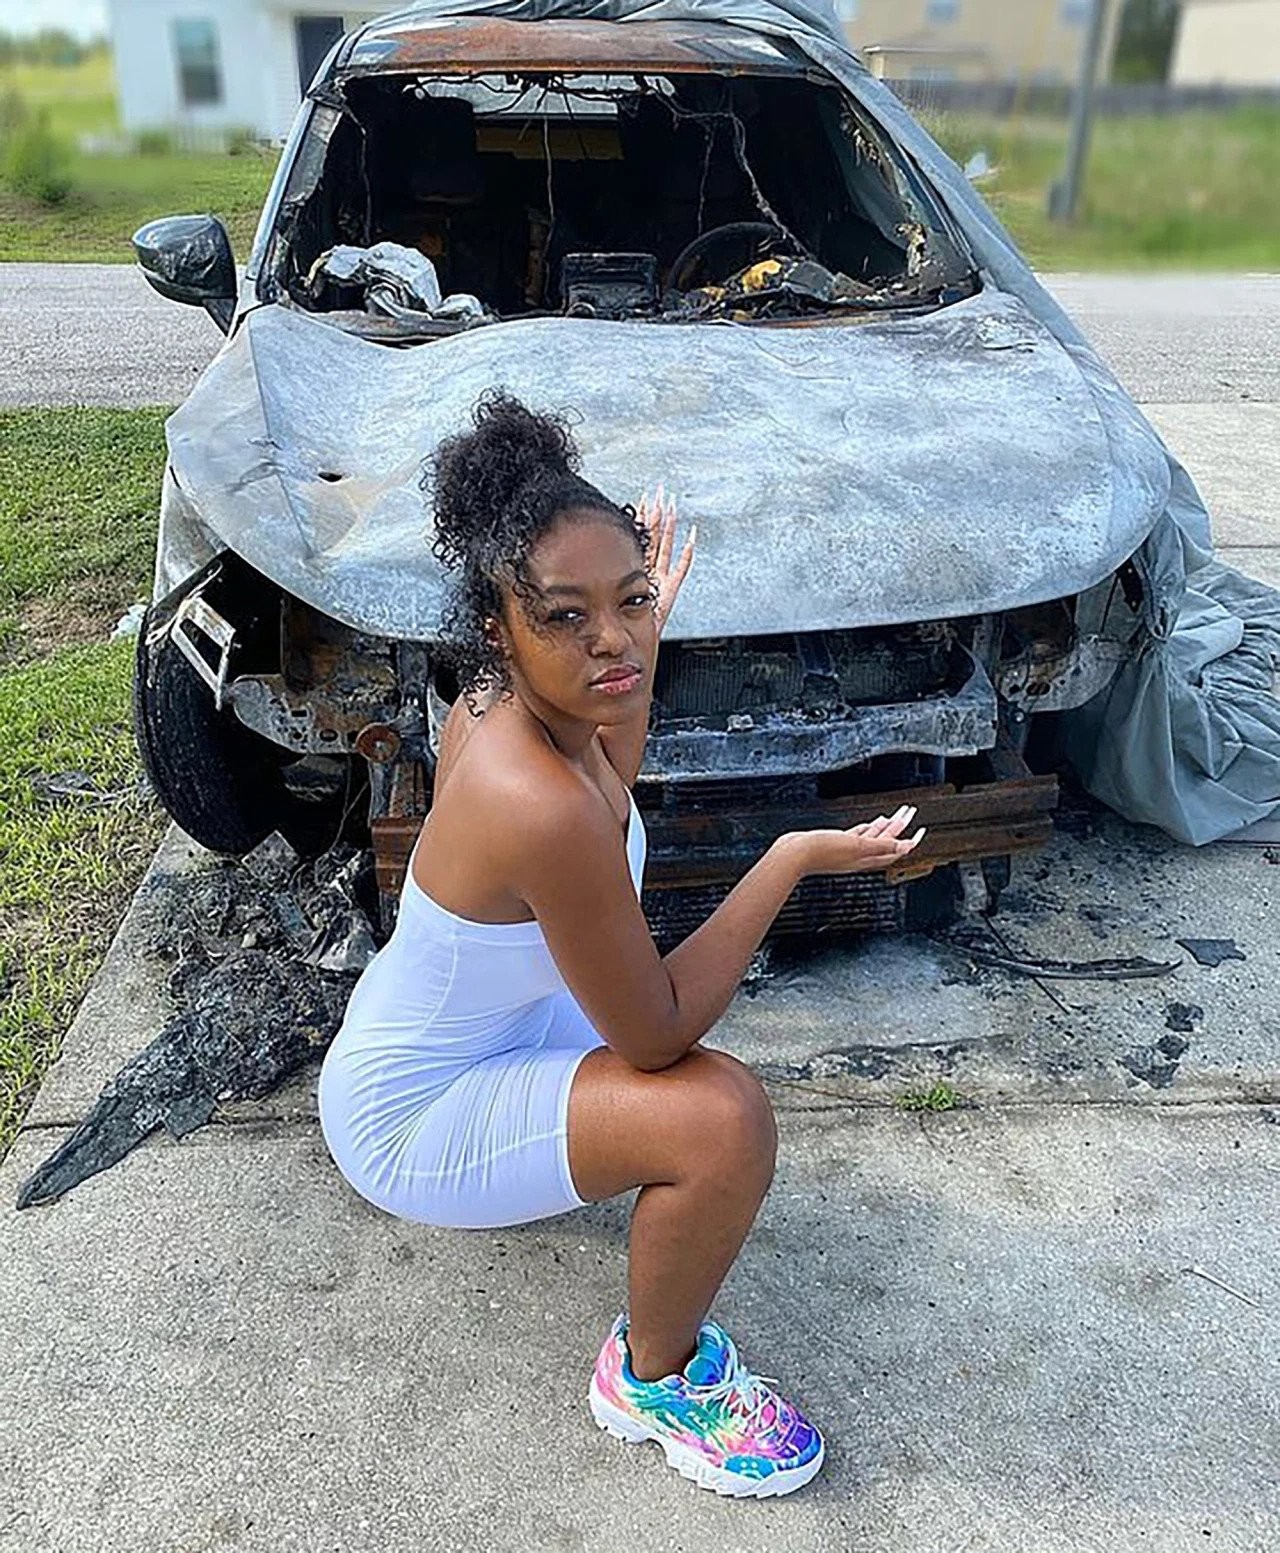 Michael Williams incendiou o carro de Azriel Clary na tentativa de silenciá-la em caso contra o cantor R. Kelly (Foto: Instagram)